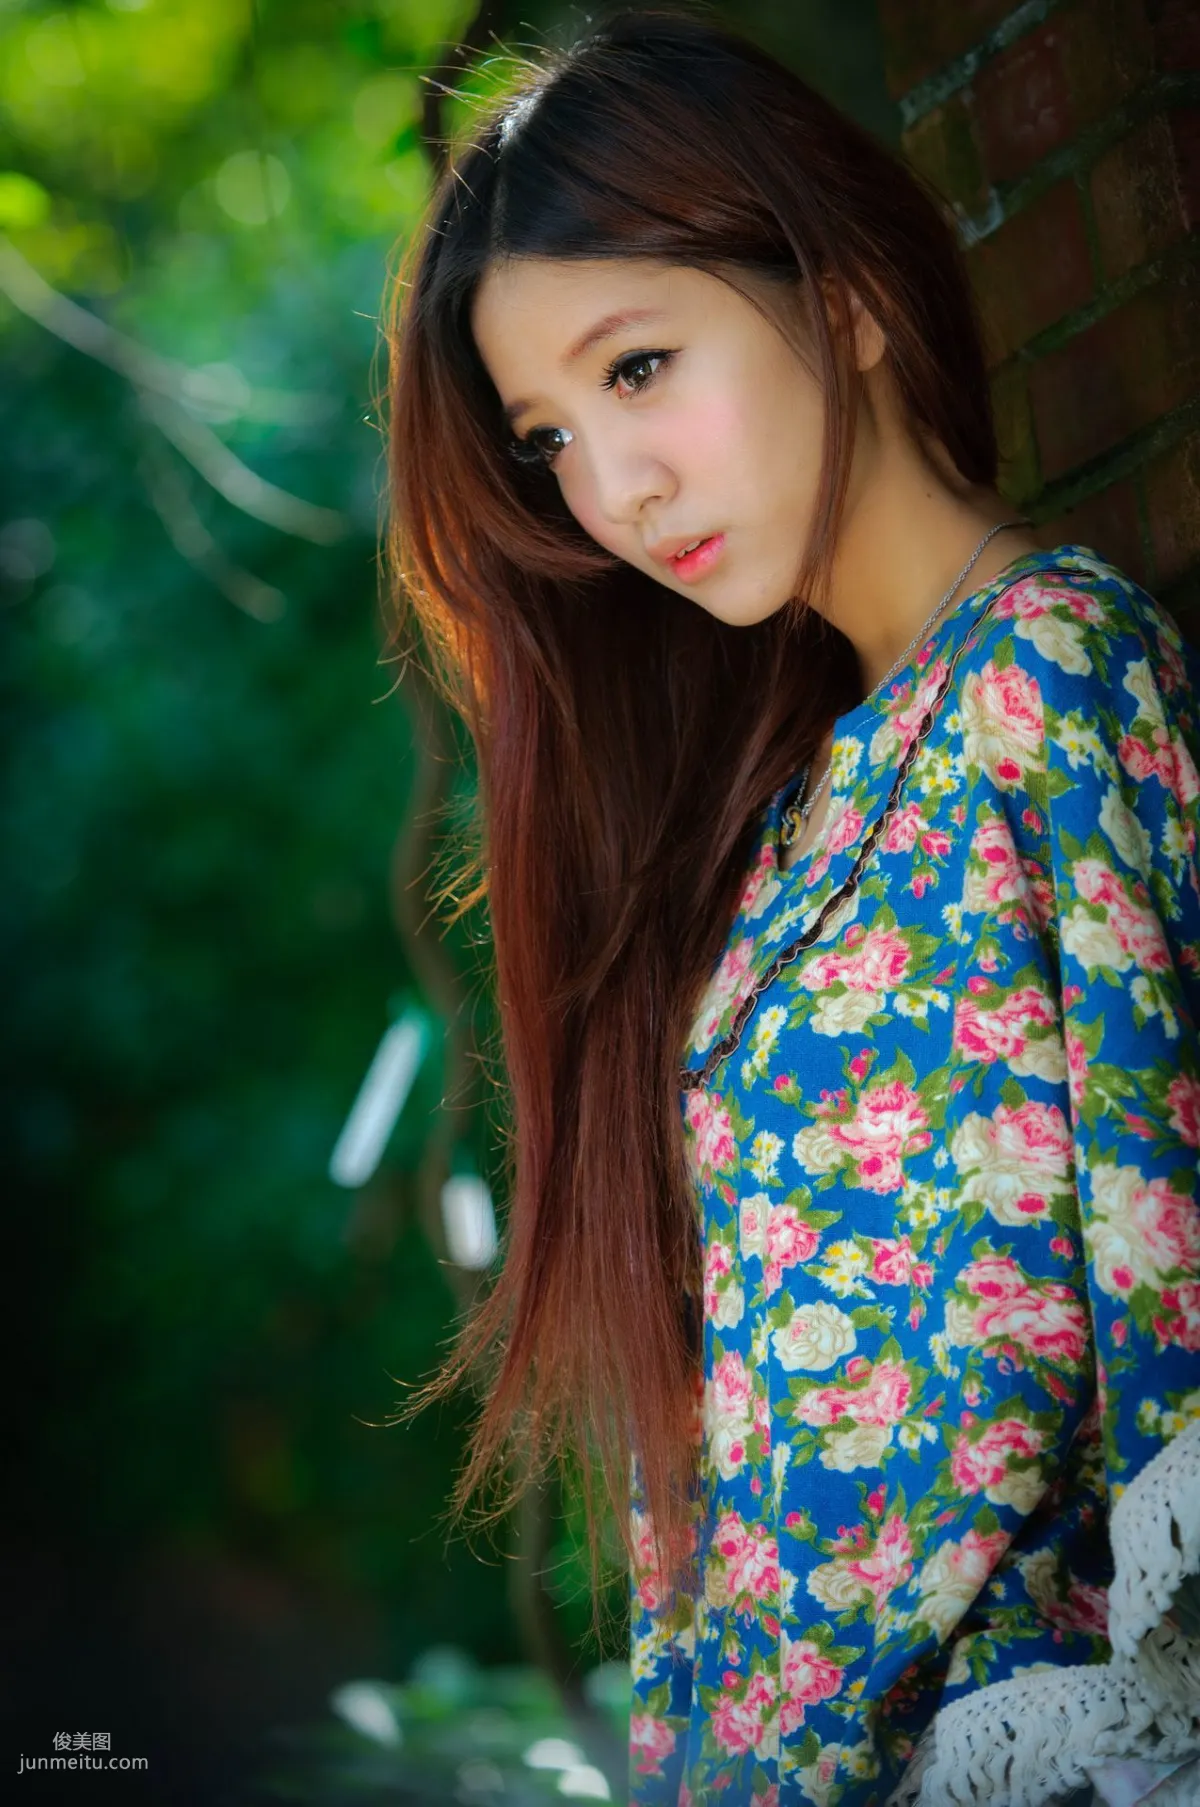 台湾美女妍安/吕芷葇《大安森林公園外拍》写真集29